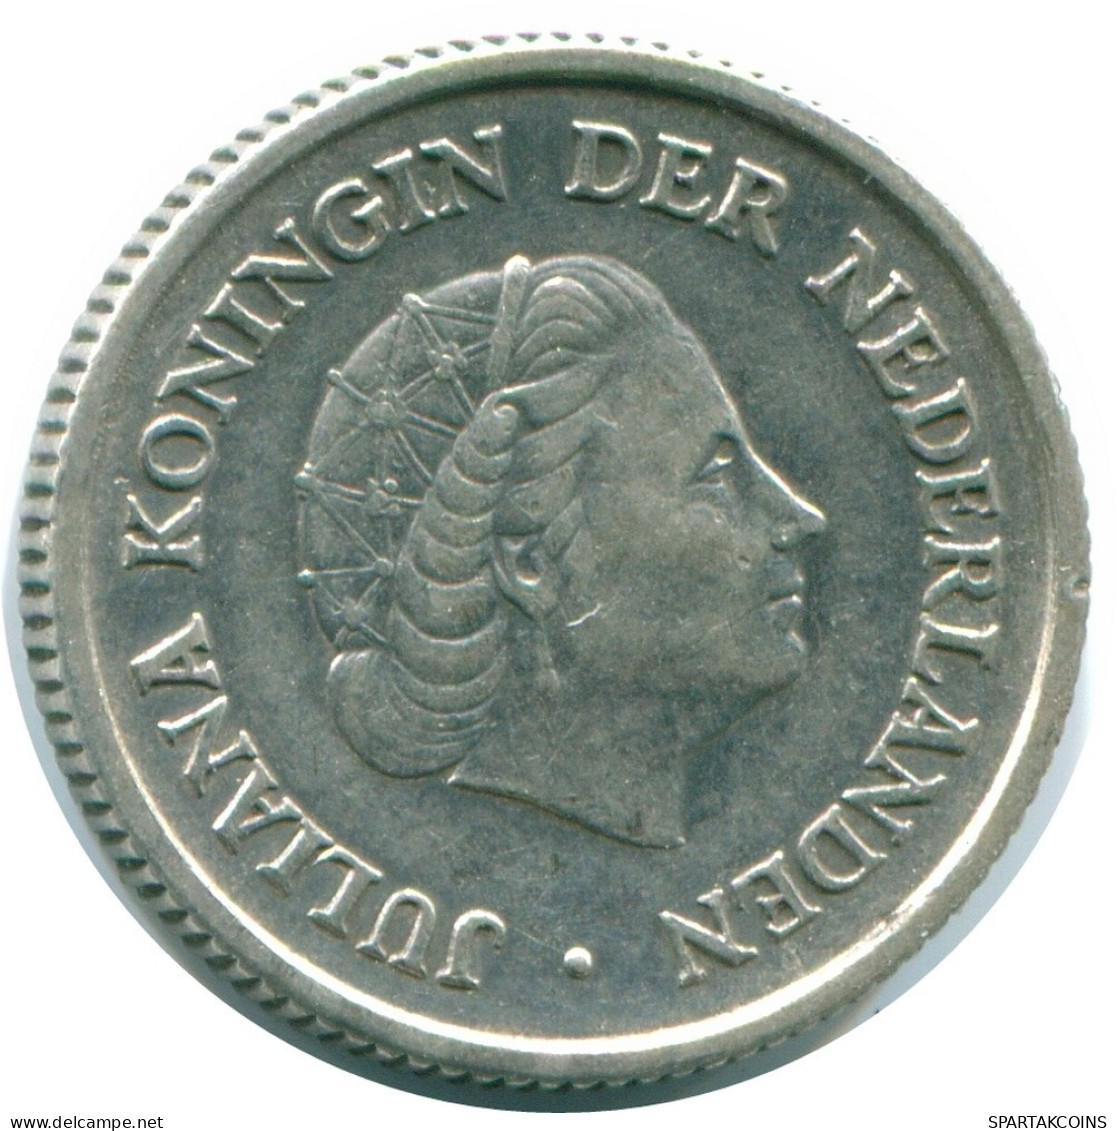 1/4 GULDEN 1957 NIEDERLÄNDISCHE ANTILLEN SILBER Koloniale Münze #NL10981.4.D.A - Niederländische Antillen